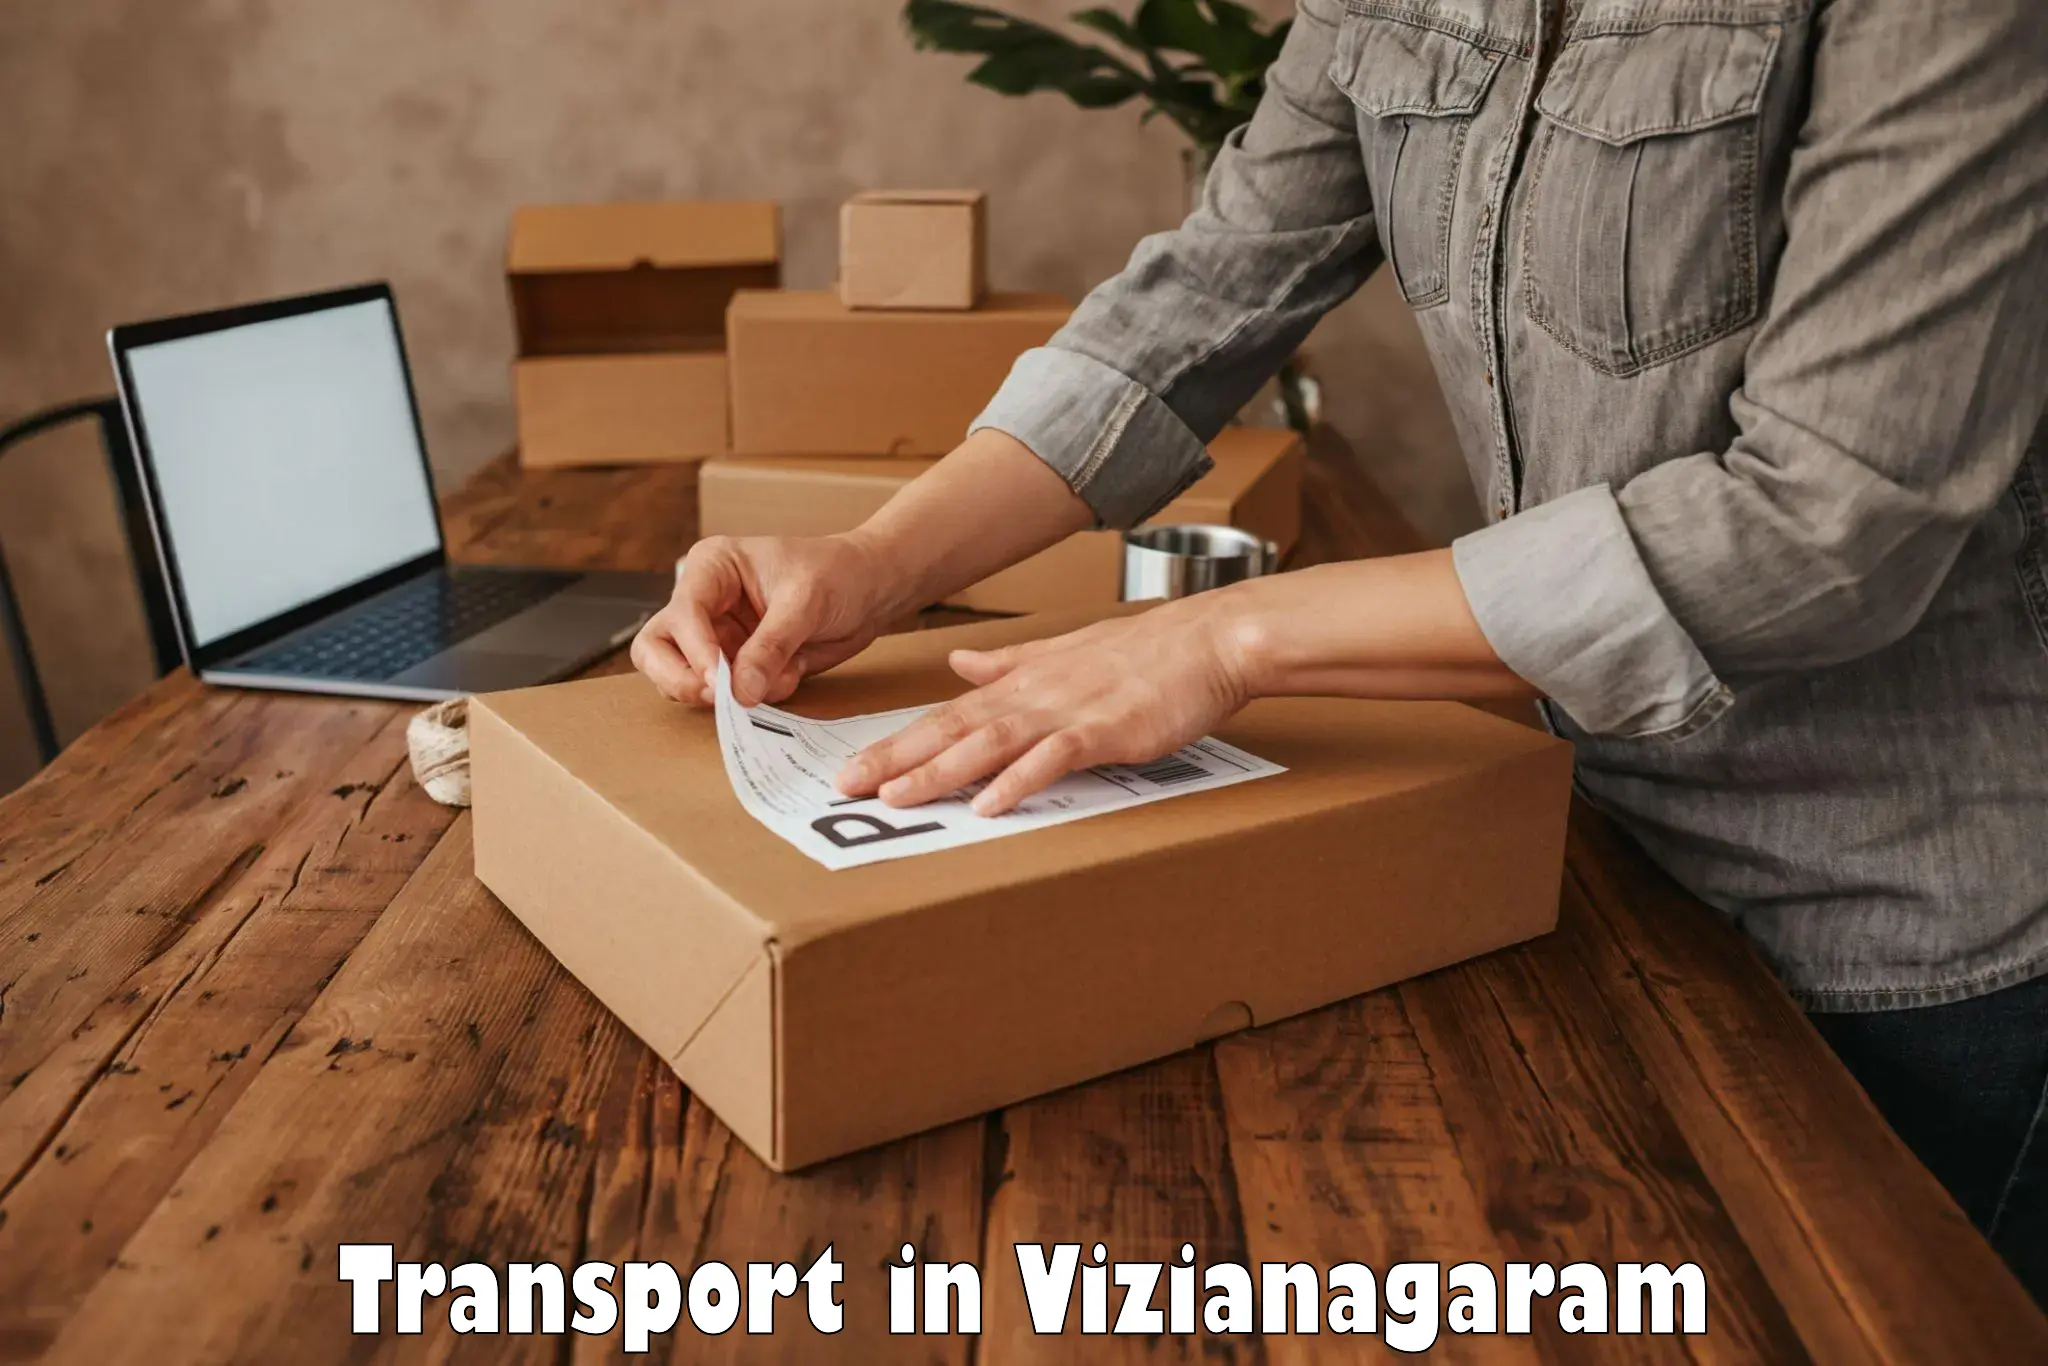 Domestic transport services in Vizianagaram